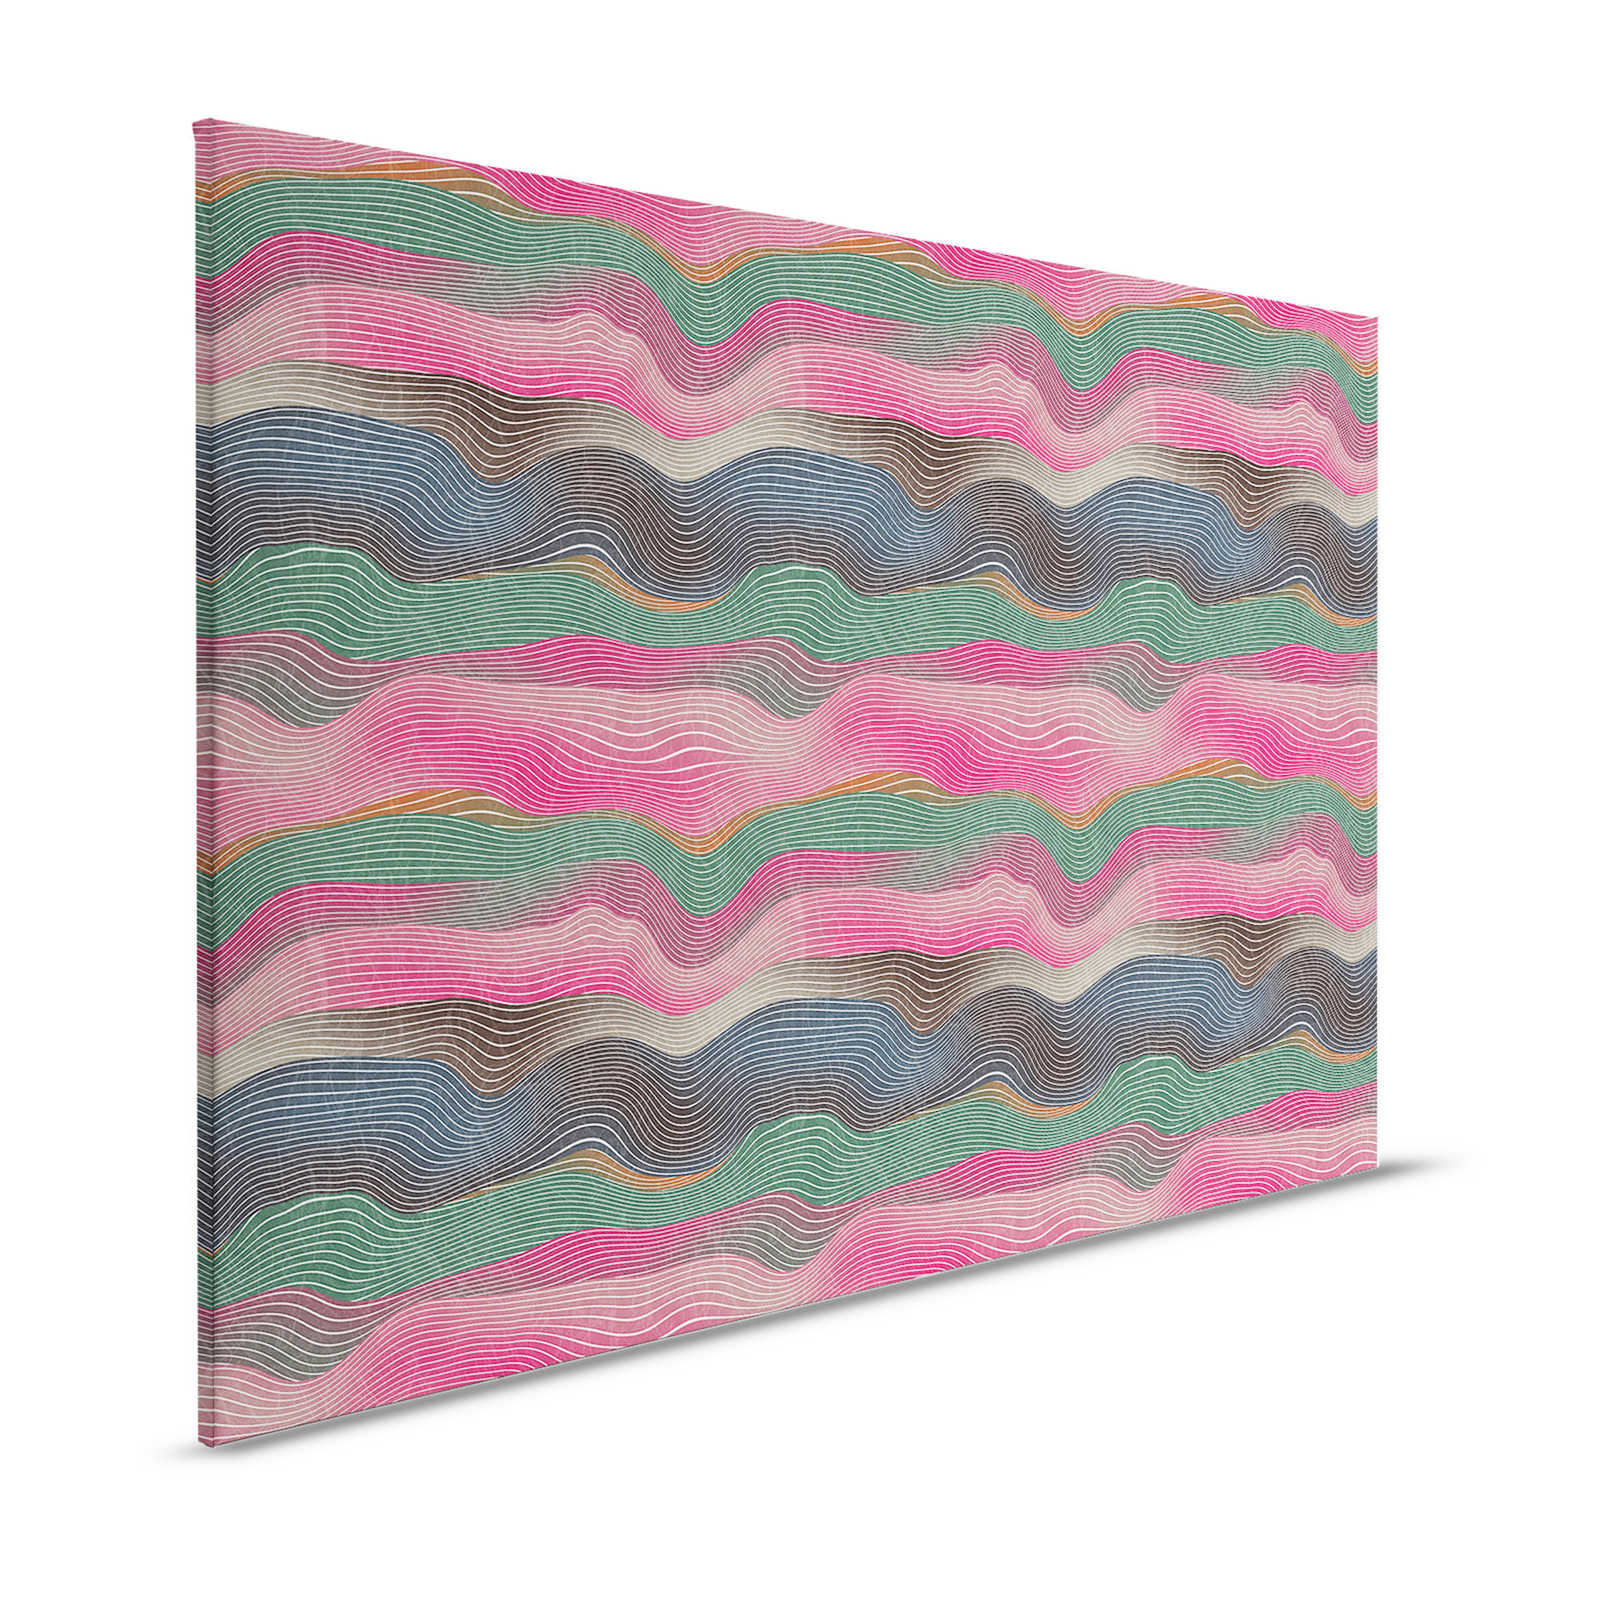 Space 1 - Leinwandbild Wellen Muster Pink & Grün im Retro Stil – 1,20 m x 0,80 m
